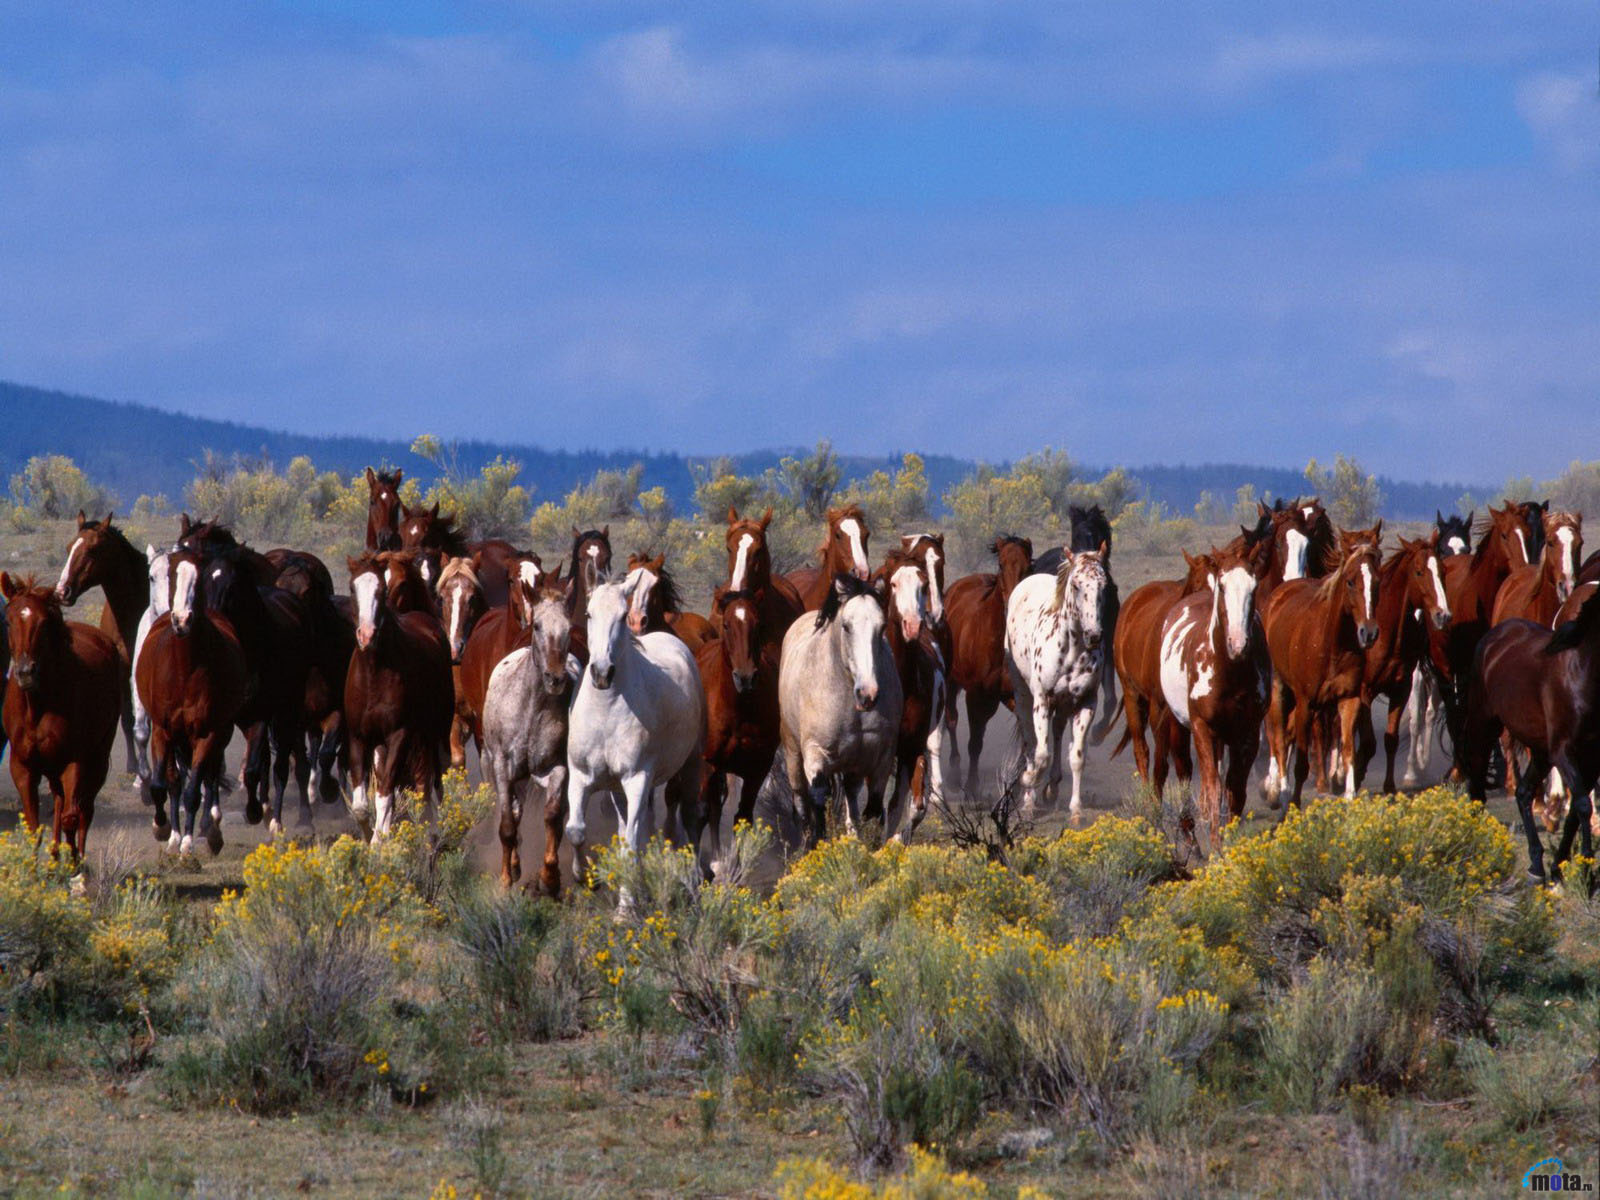 Download Wallpaper horse herd, 1600x The herd of wild horses